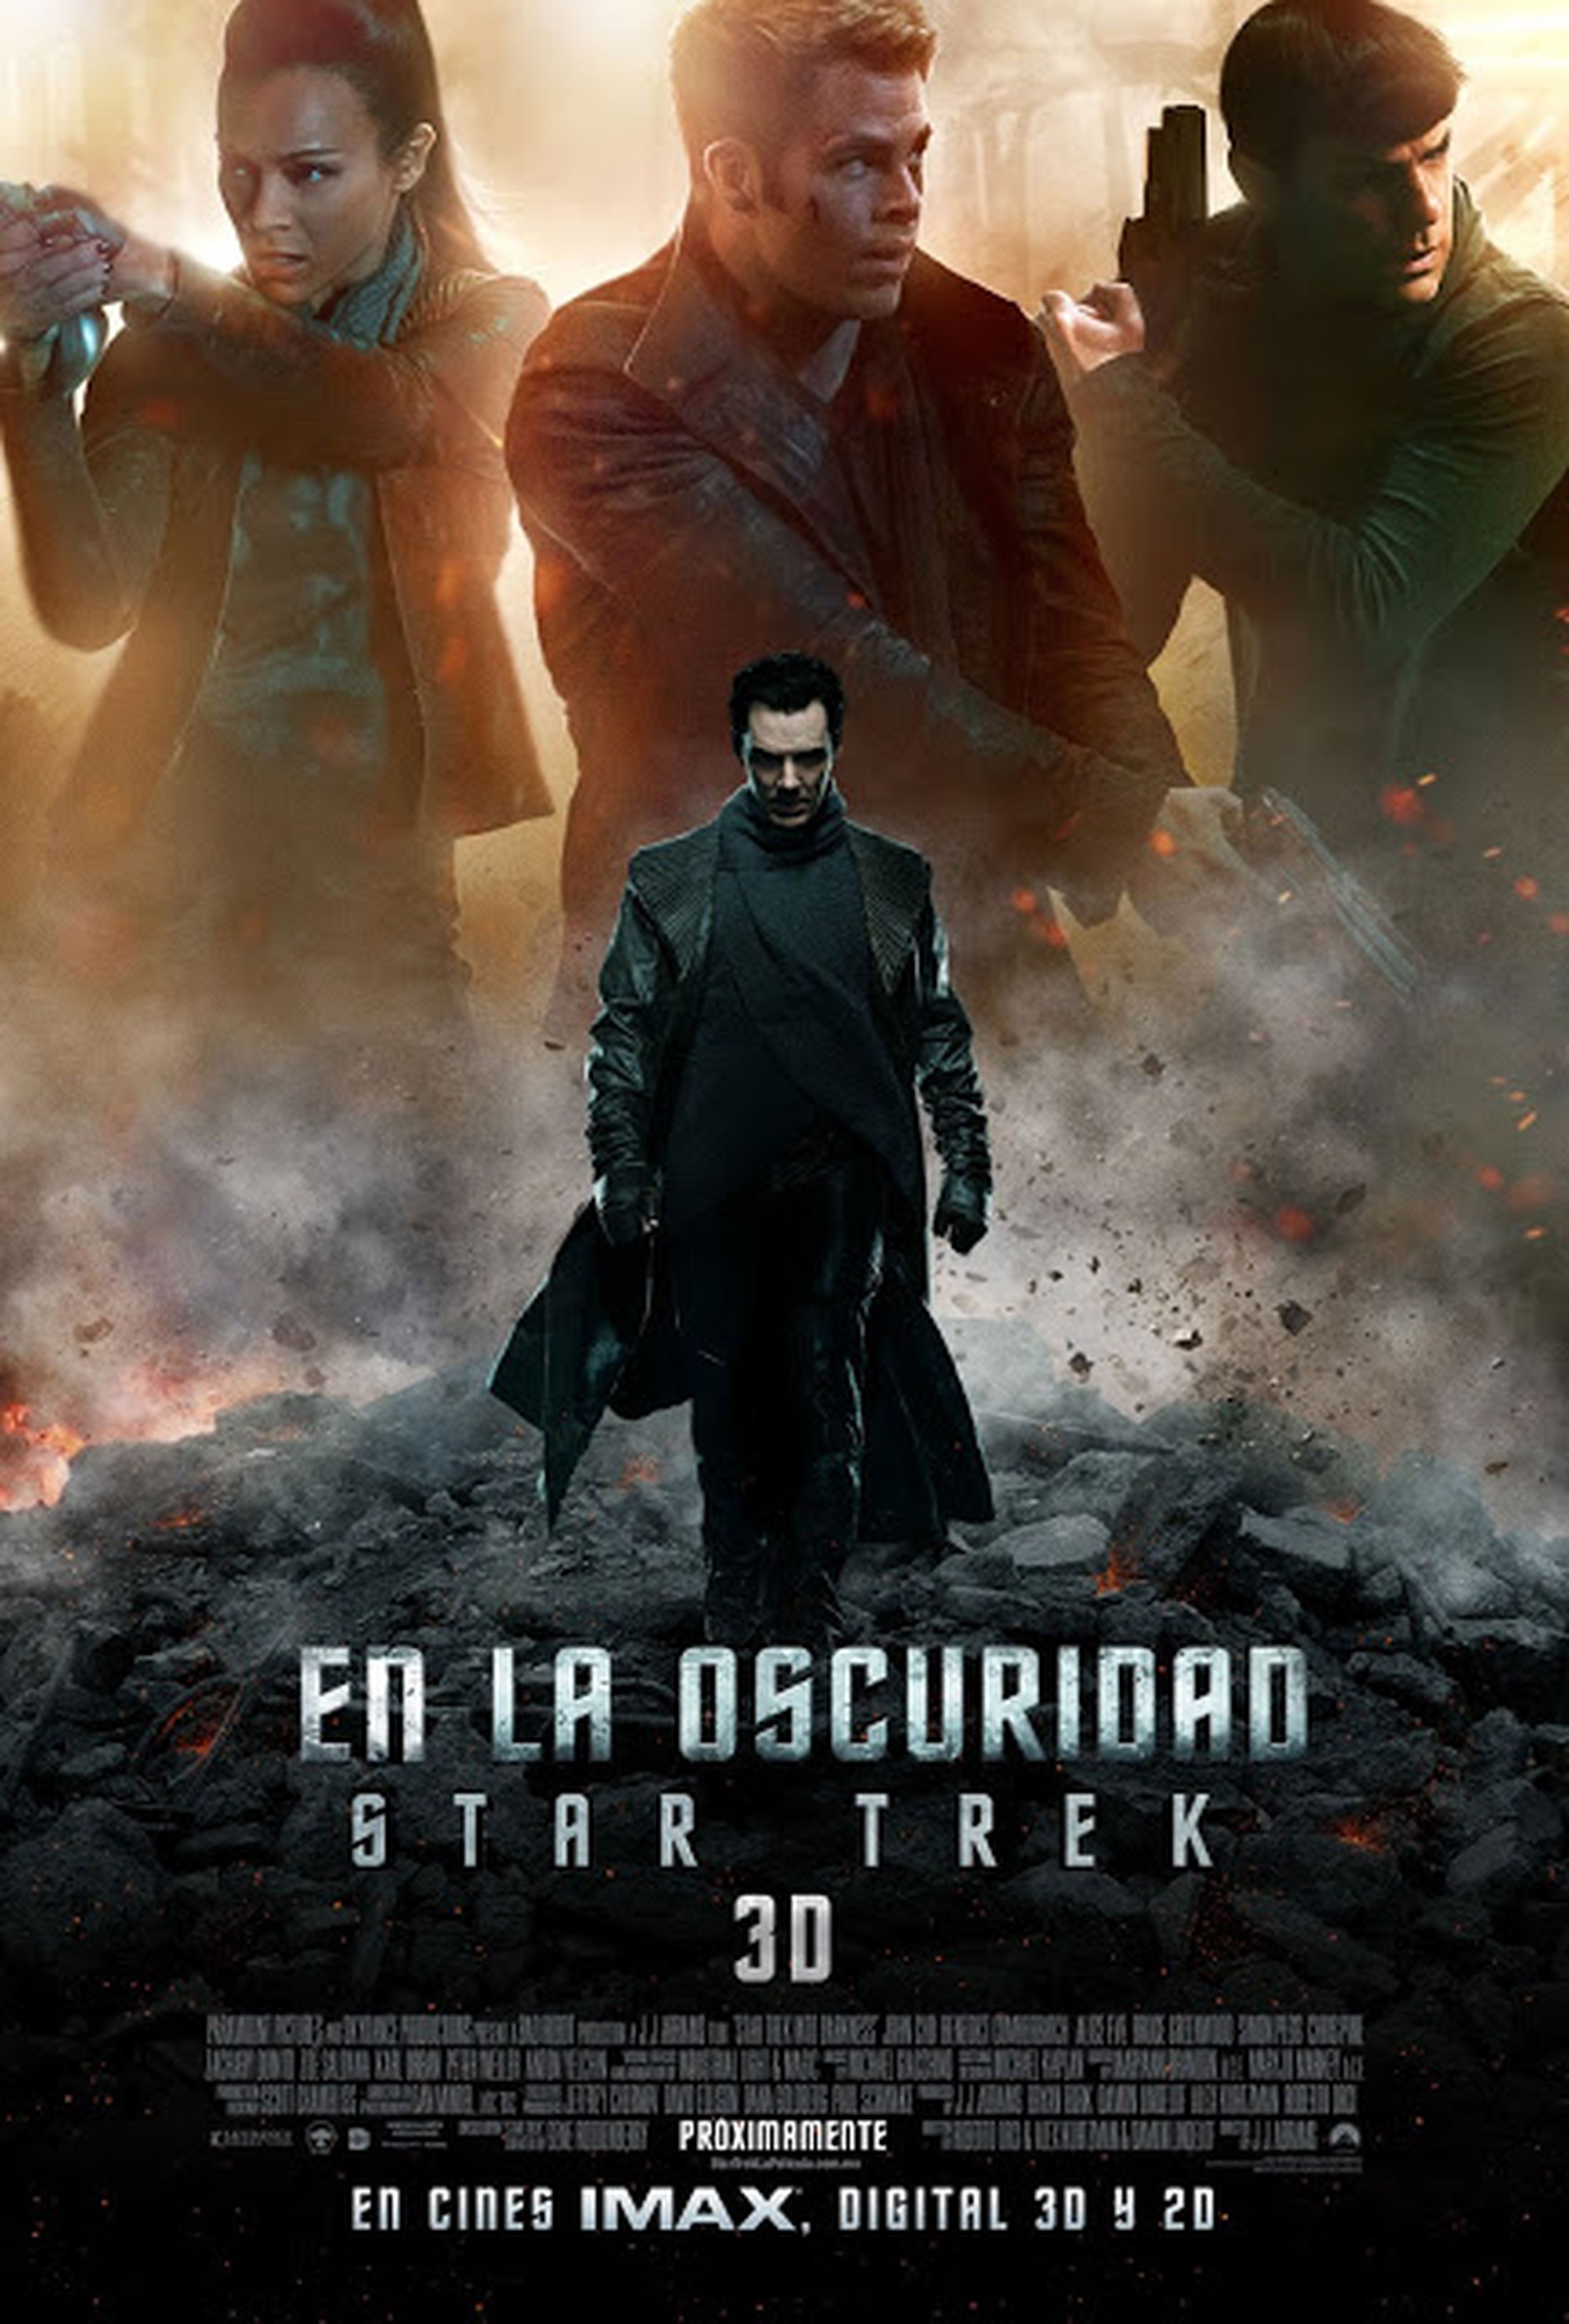 Nuevo trailer y cartel de Star Trek: en la oscuridad